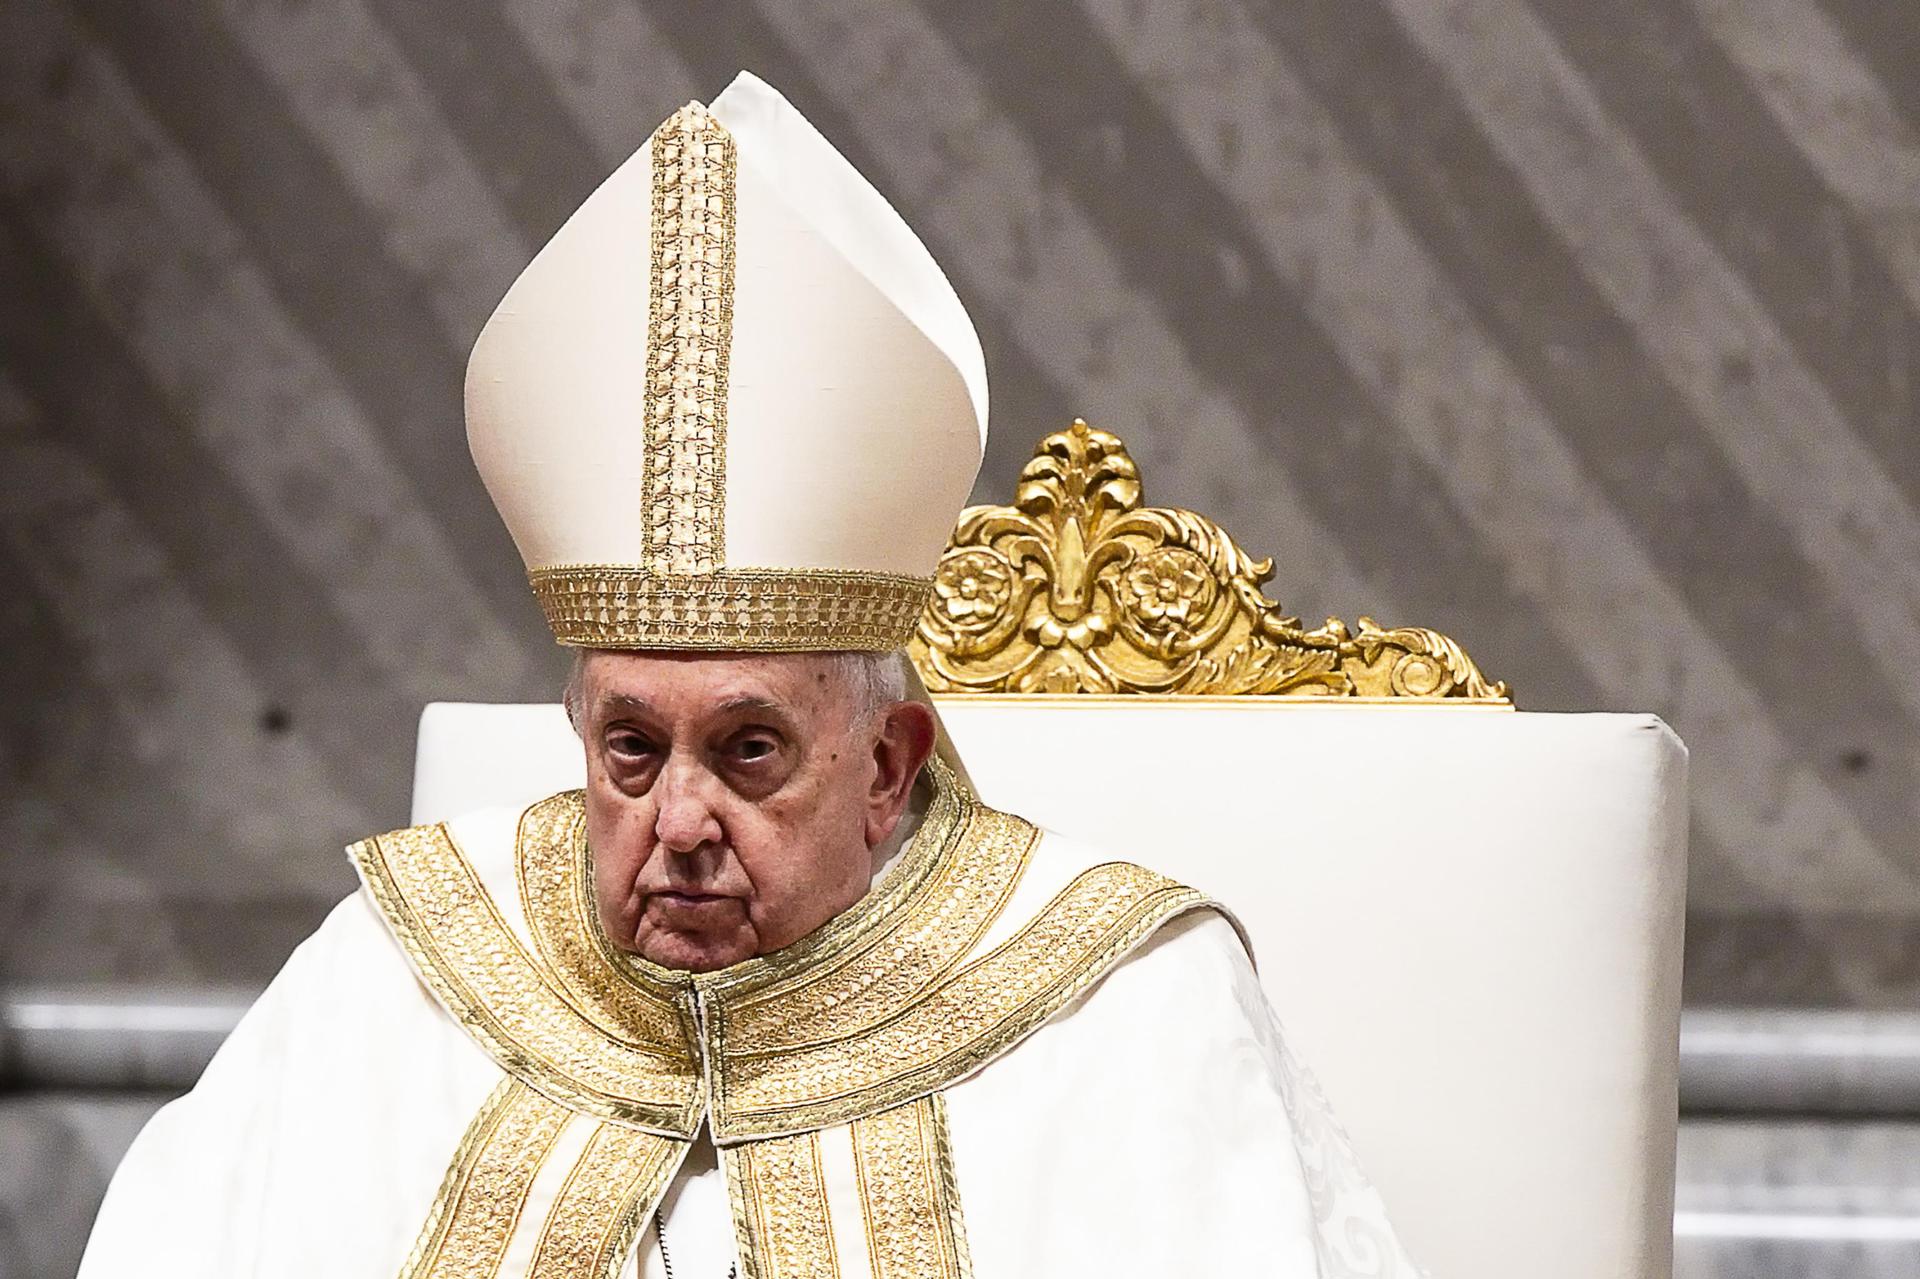 El papa Francisco no cambiará las reglas del cónclave: “Son todo invenciones para causar malestar”